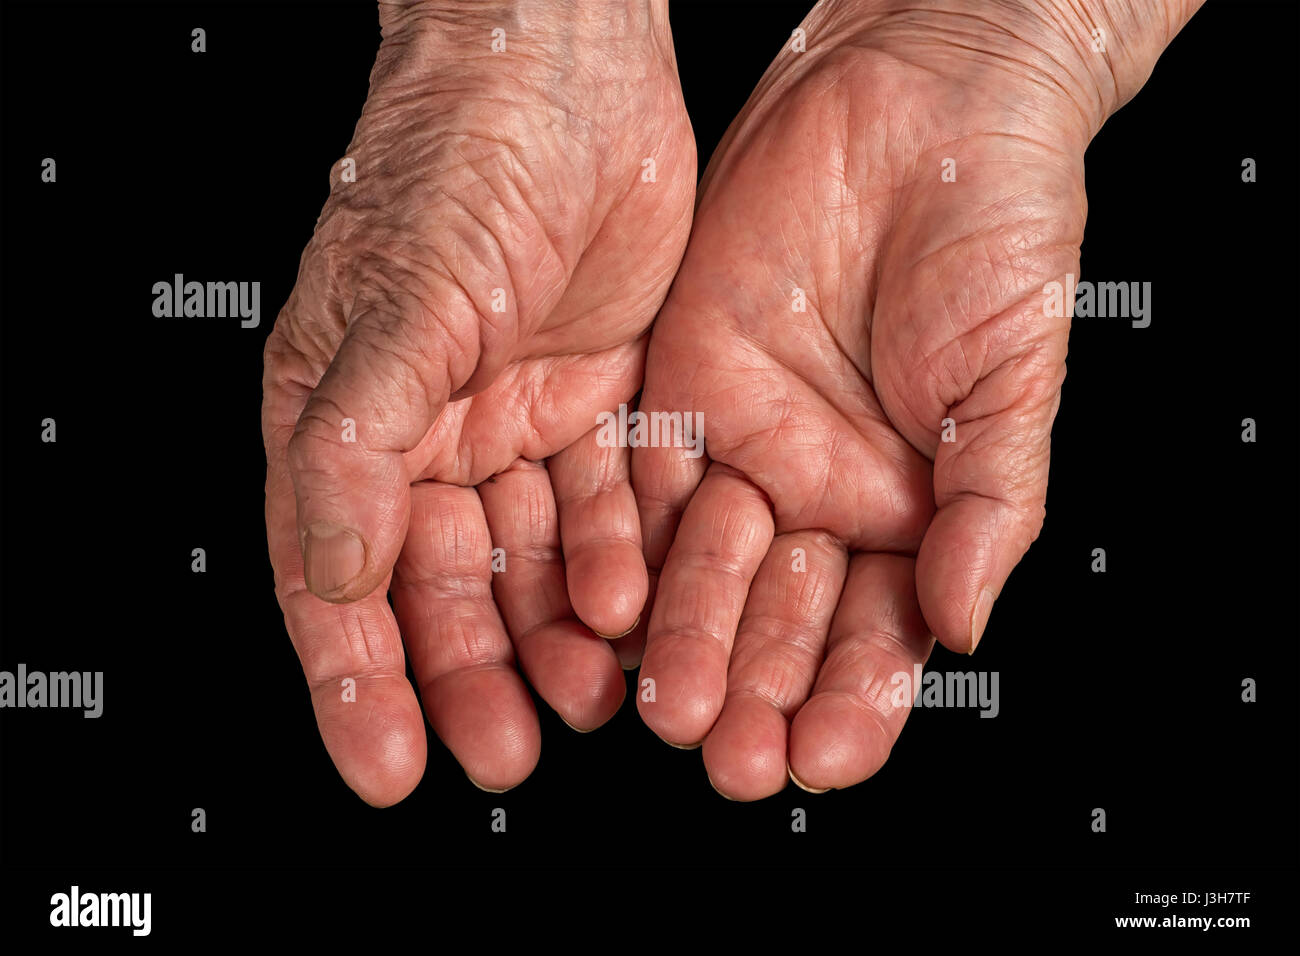 Ältere Frau faltige Hände. Handflächen nach oben. Isoliert auf schwarz,  Clipping-Pfad enthalten Stockfotografie - Alamy